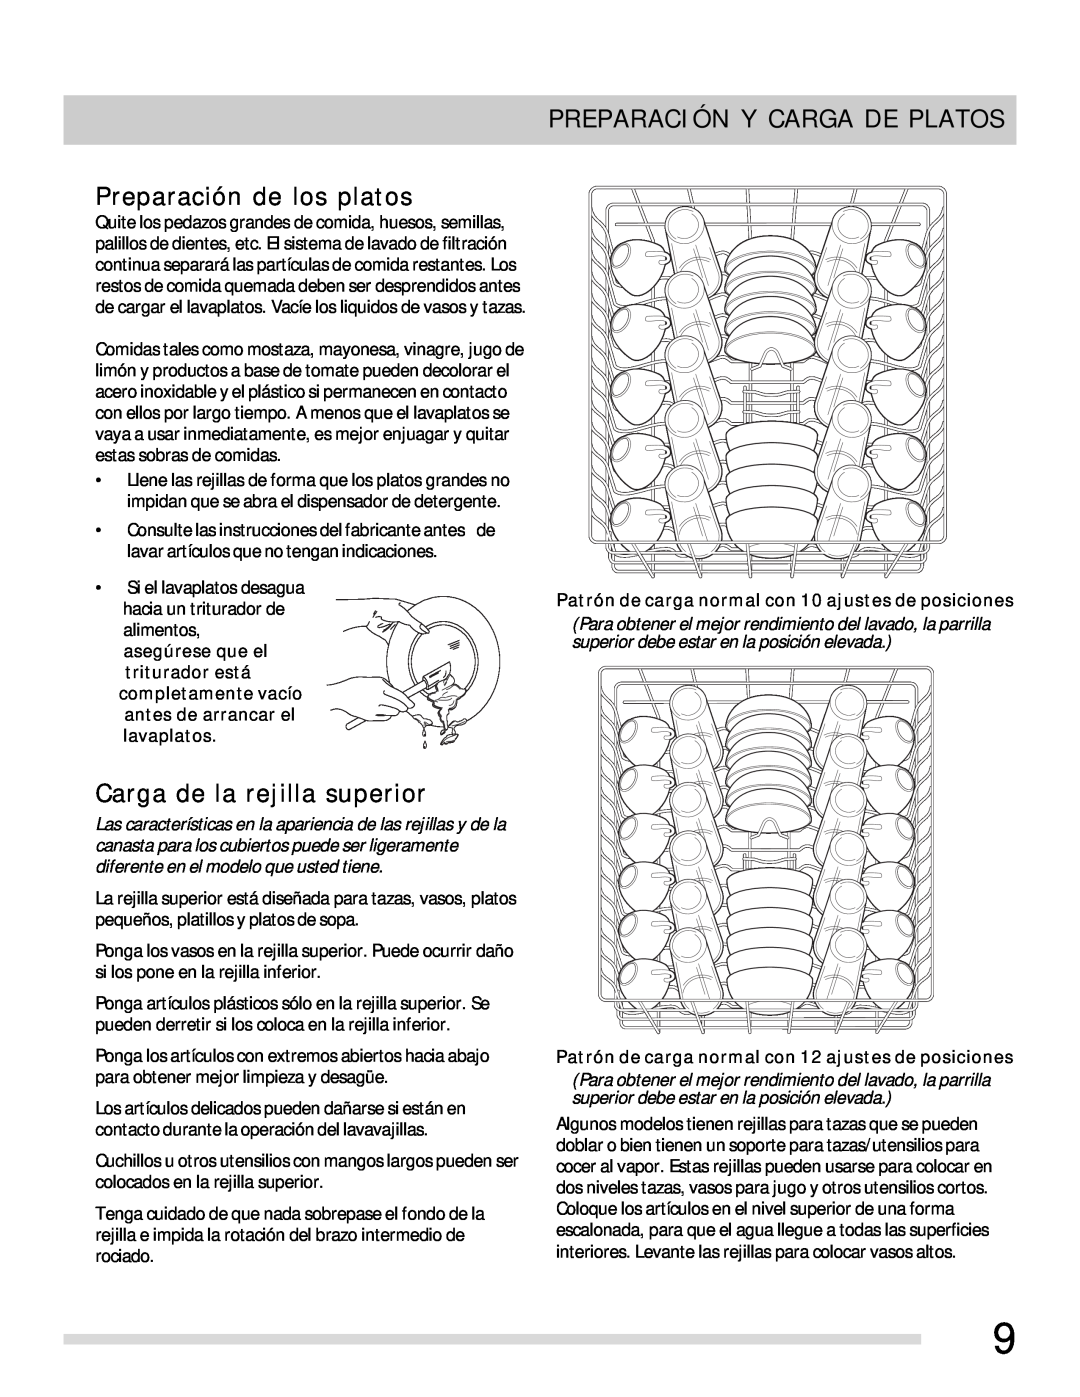 Frigidaire 154768703 manual Preparación Y Carga De Platos, Preparación de los platos, Carga de la rejilla superior 